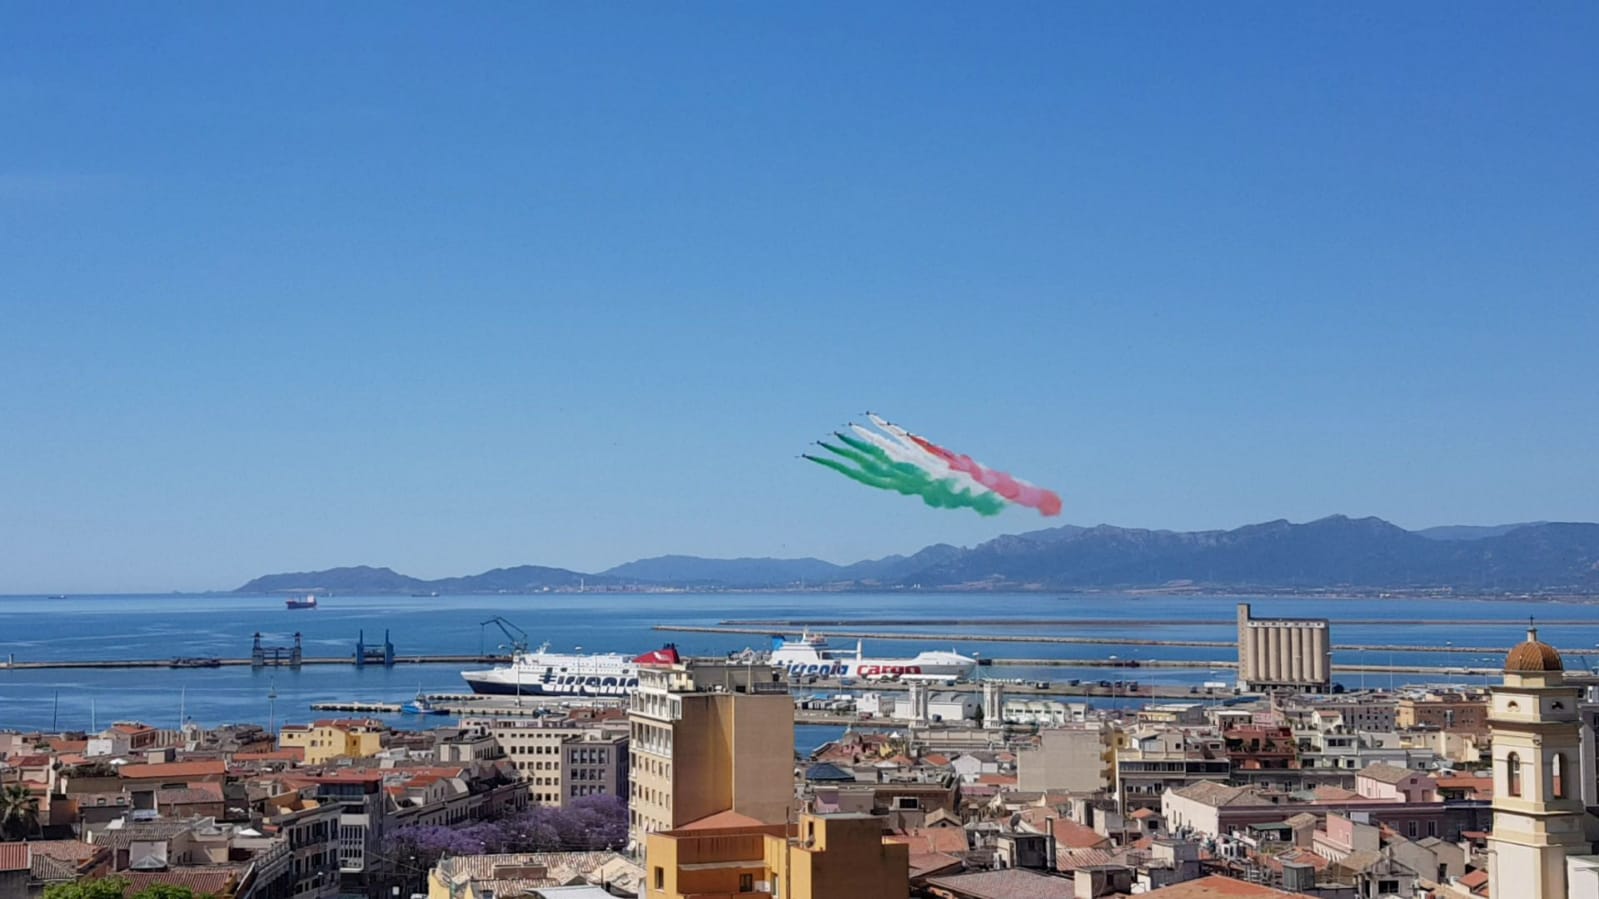 Lo spettacolo della Pattuglia Acrobatica Militare sul cielo di Cagliari.